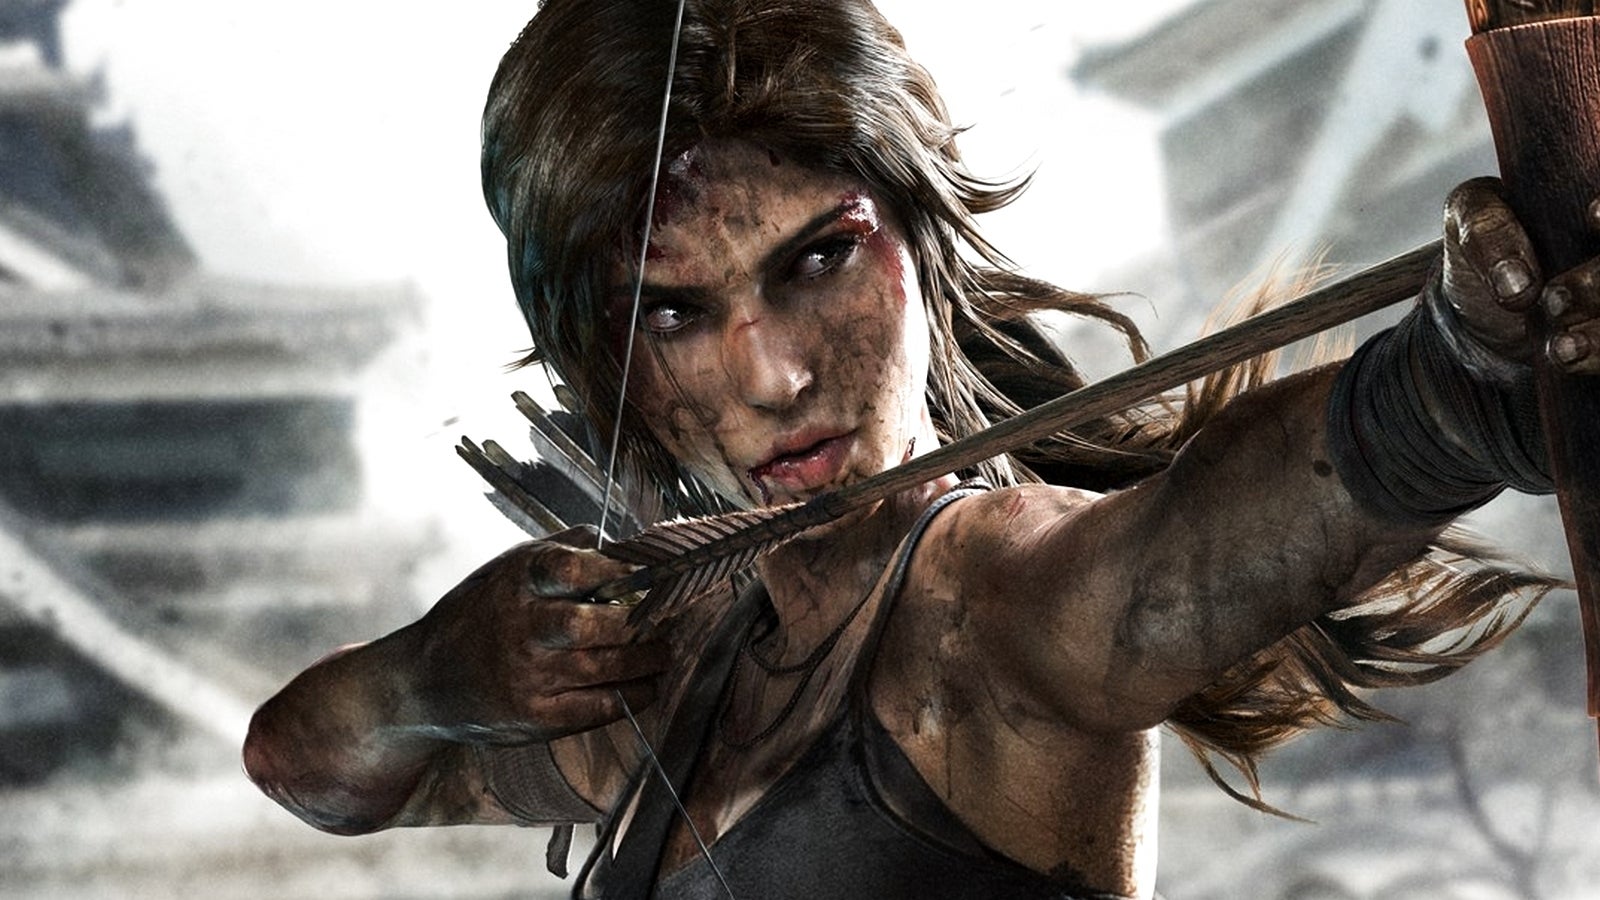 Bilder zu Tomb Raider für PS4 in der Definitive Edition für 2,99 Euro - so gut wie geschenkt!